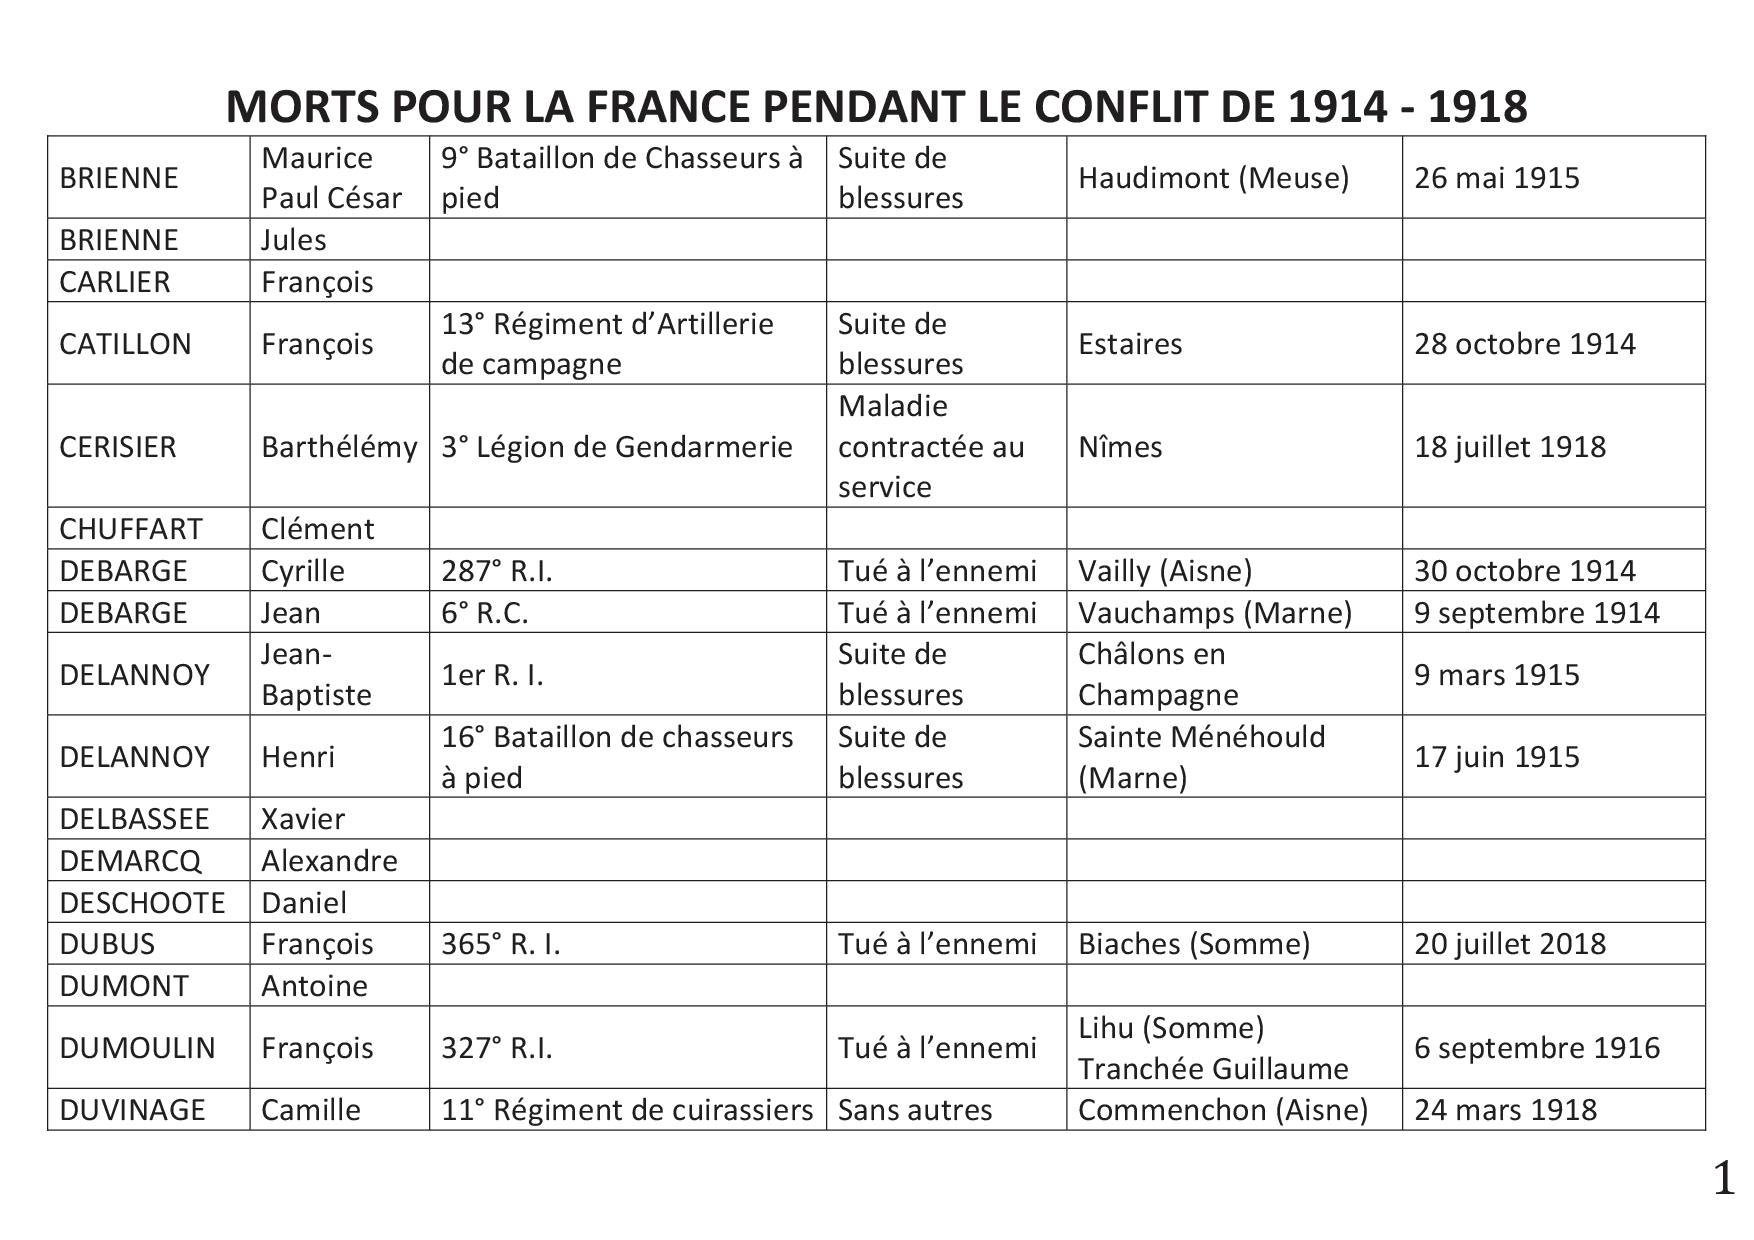 Morts pour la France en 1914-1918